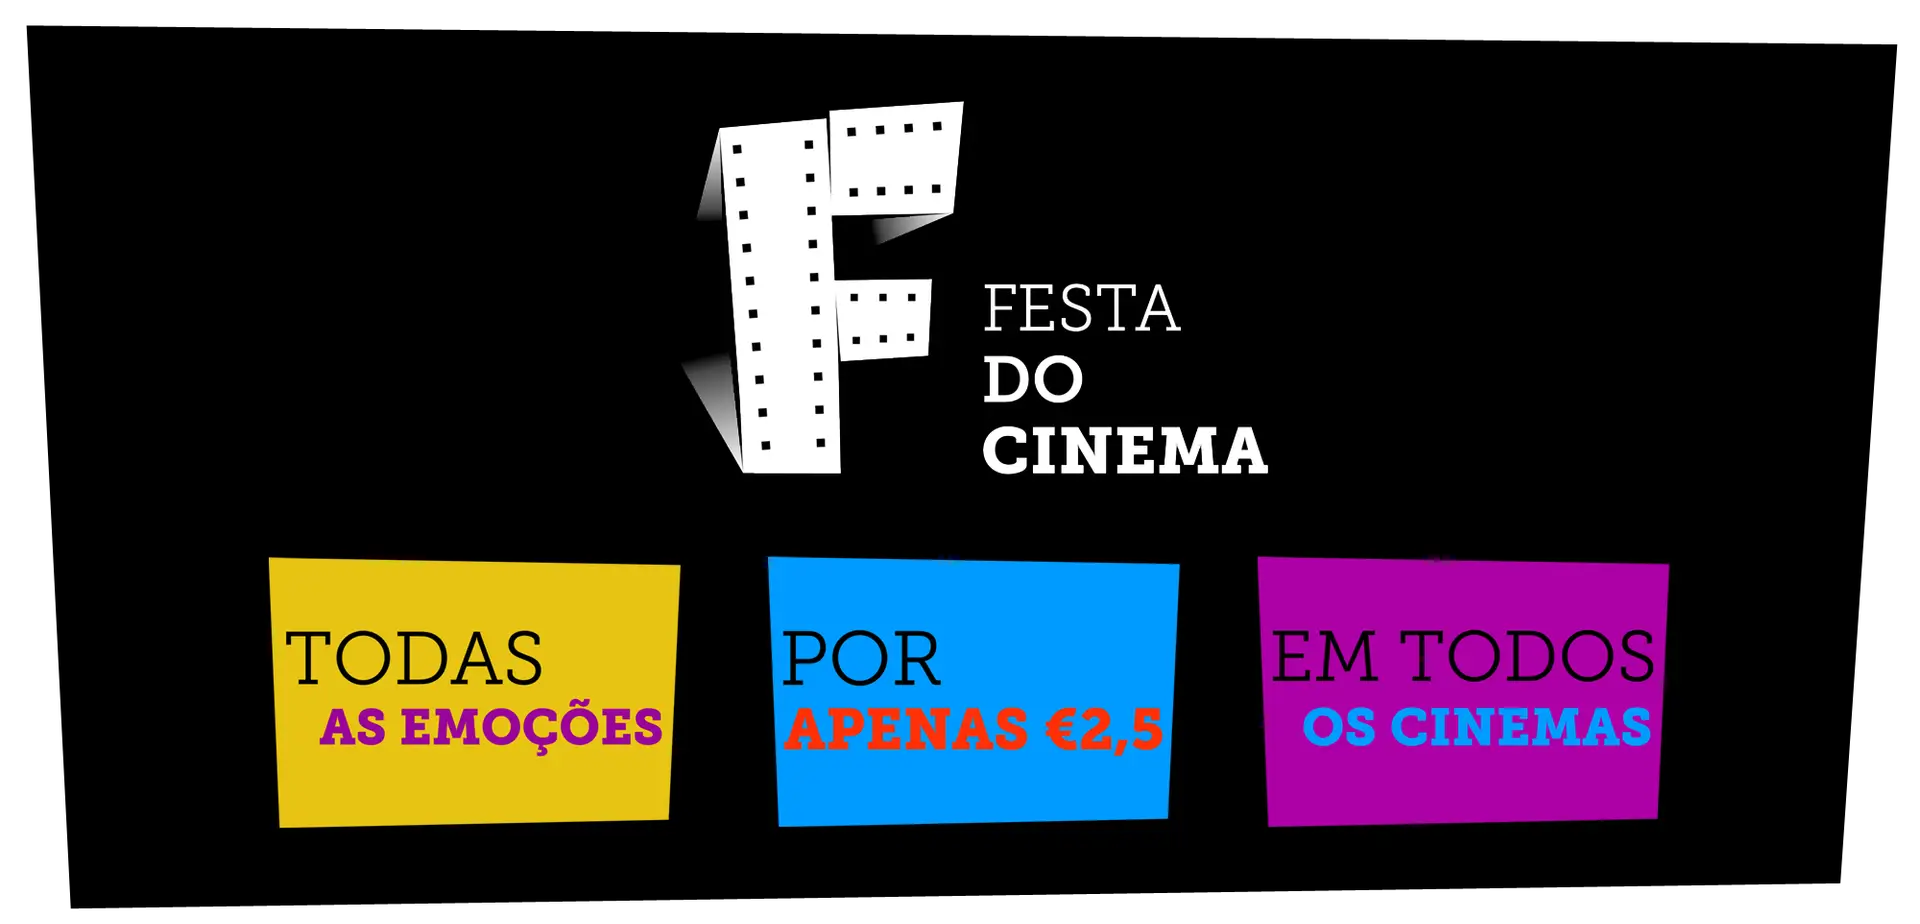 Festa do Cinema teve 130 mil espectadores nas salas portuguesas durante três dias